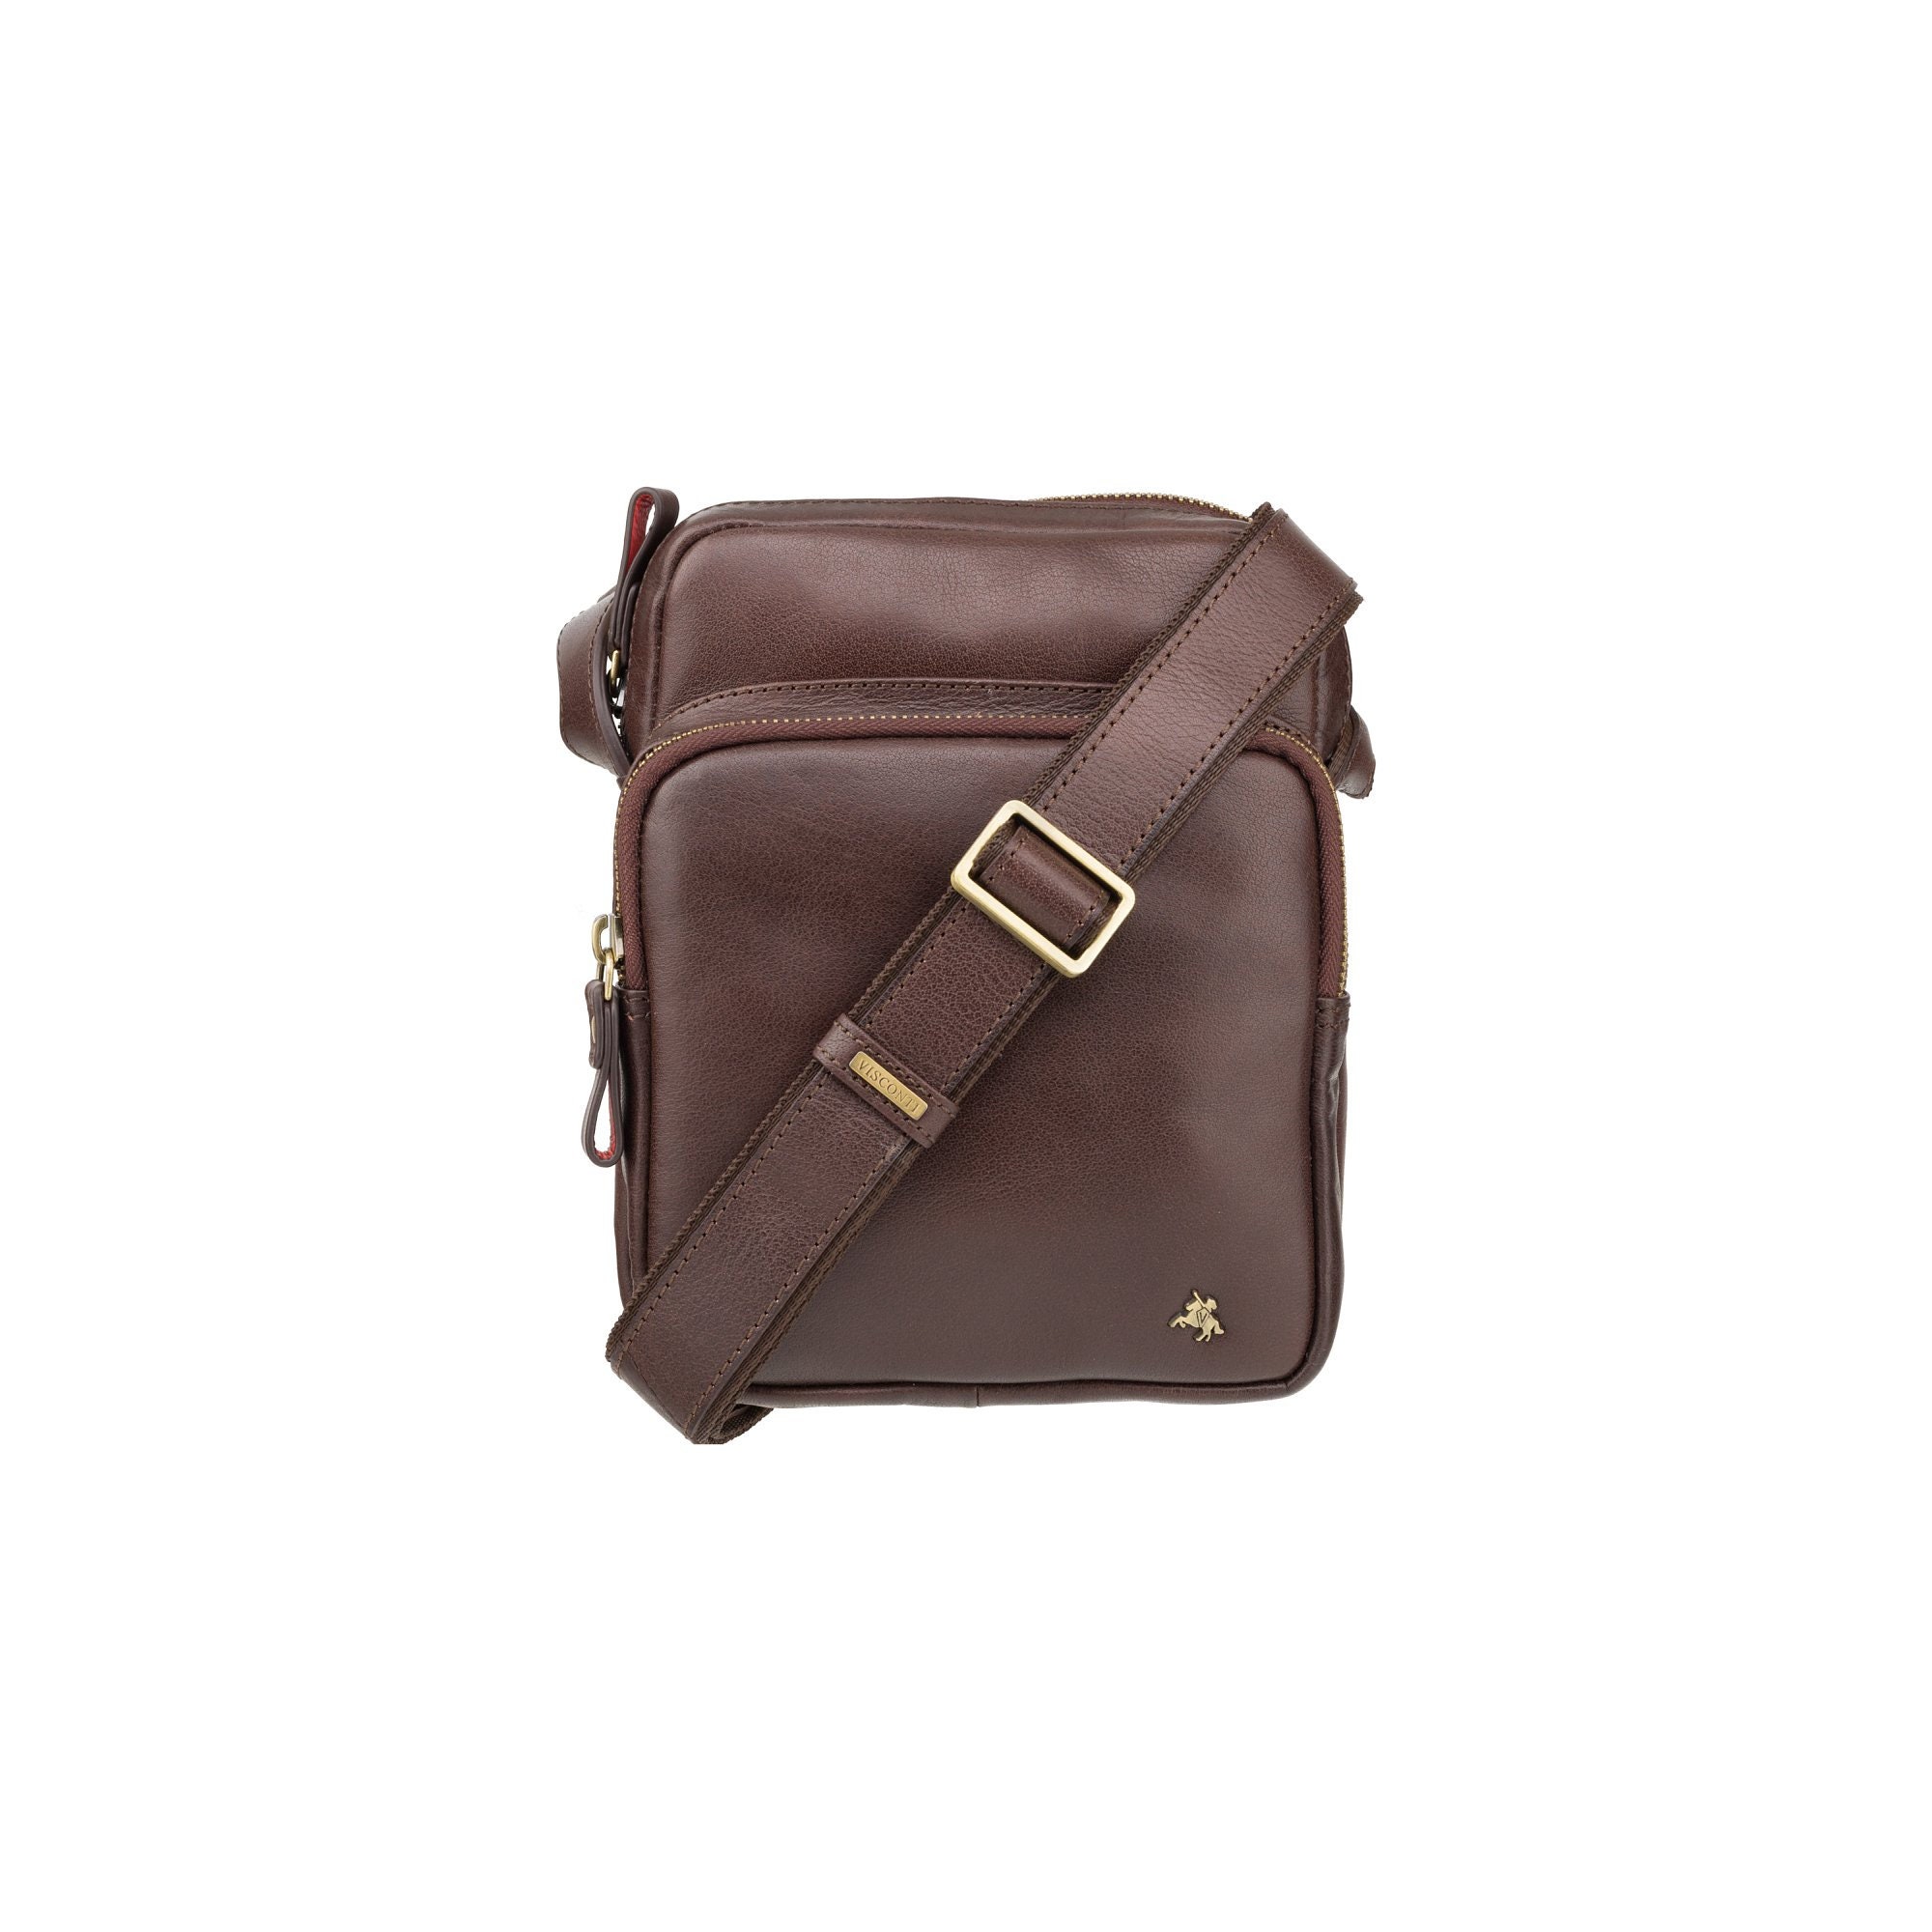 Brown Leather Small Messenger Bag for Men Cross Body Design - Etsy UK